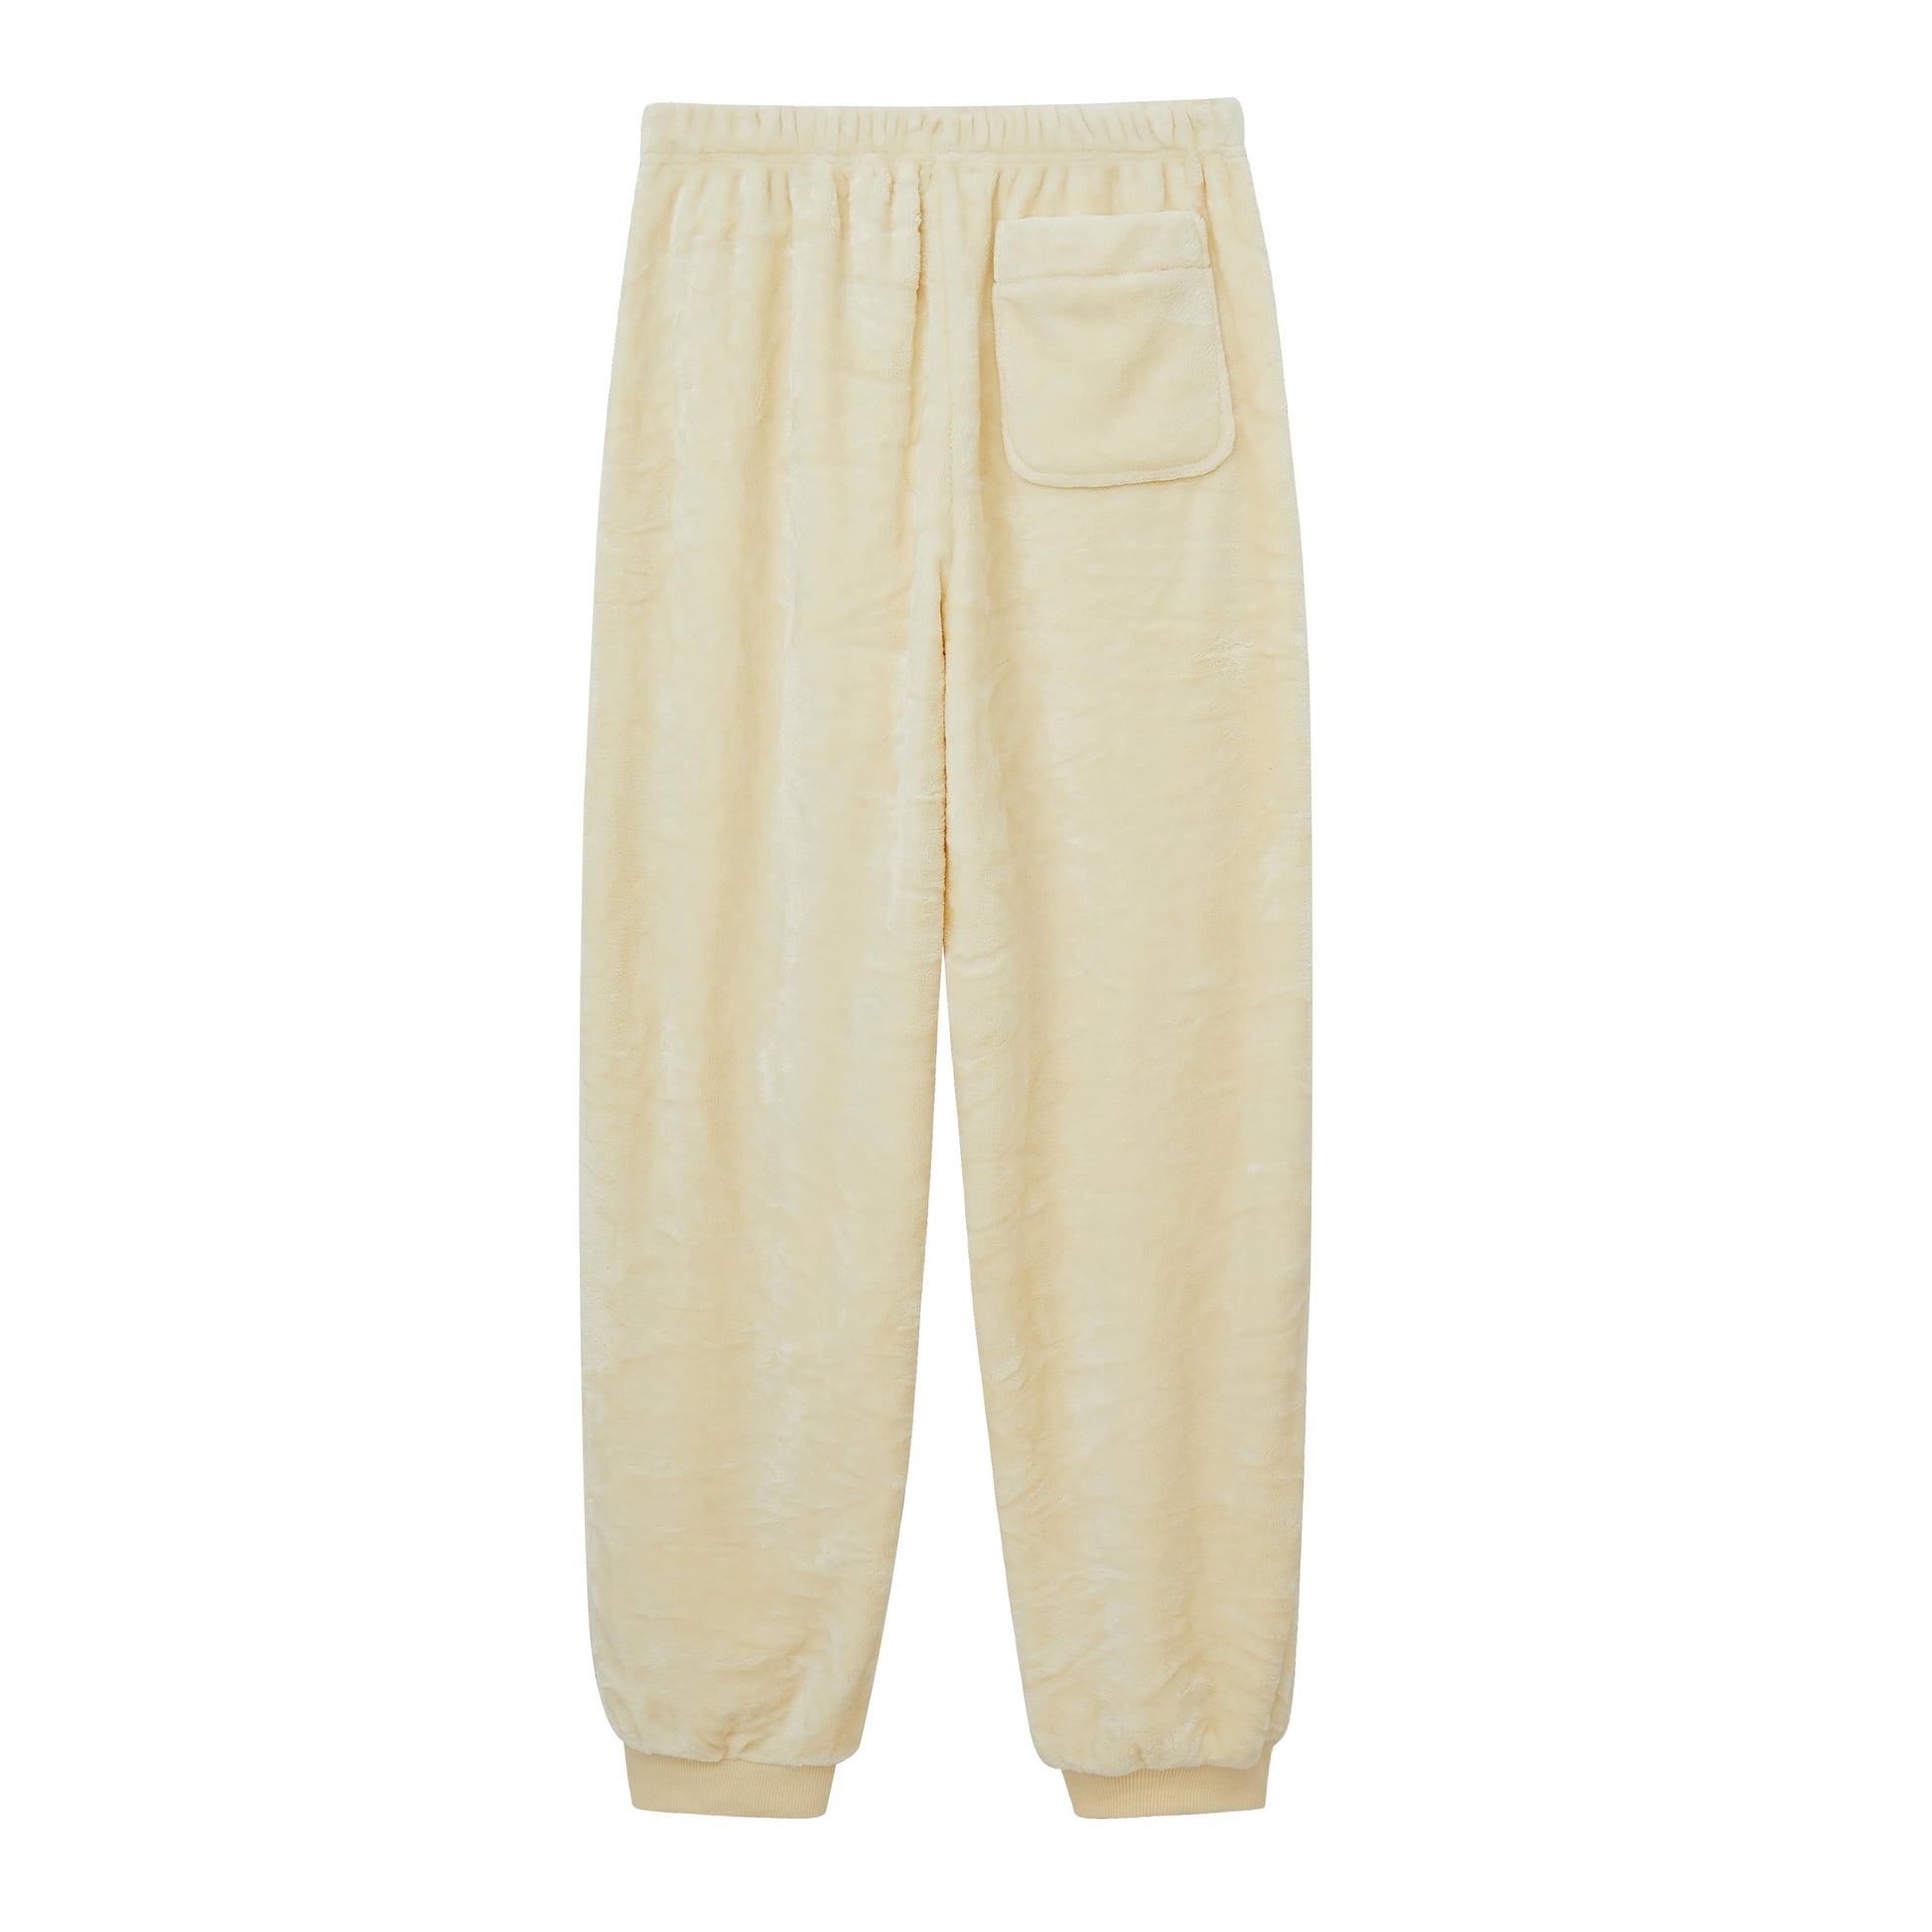 Pajama Pants - Beige melange - Ladies